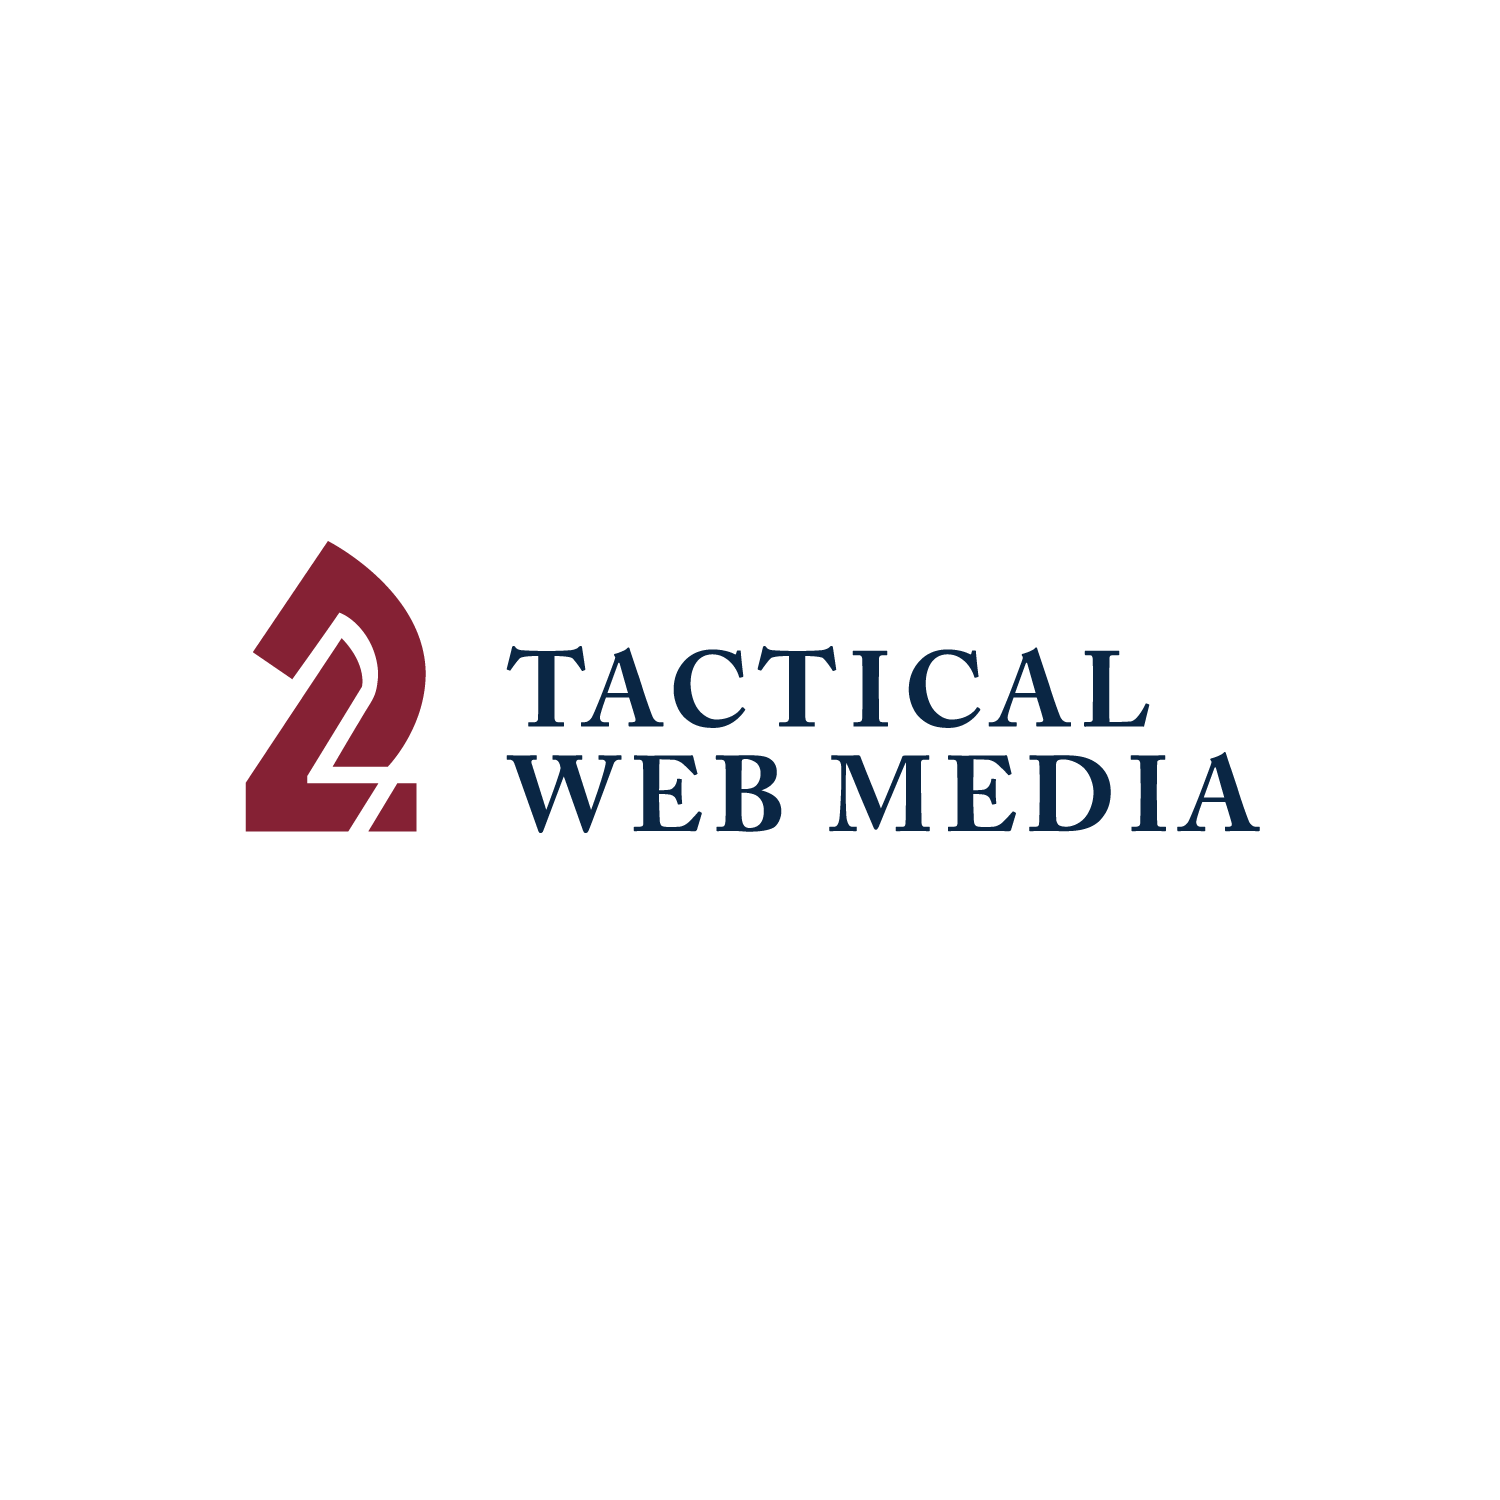 Tactical Web Media